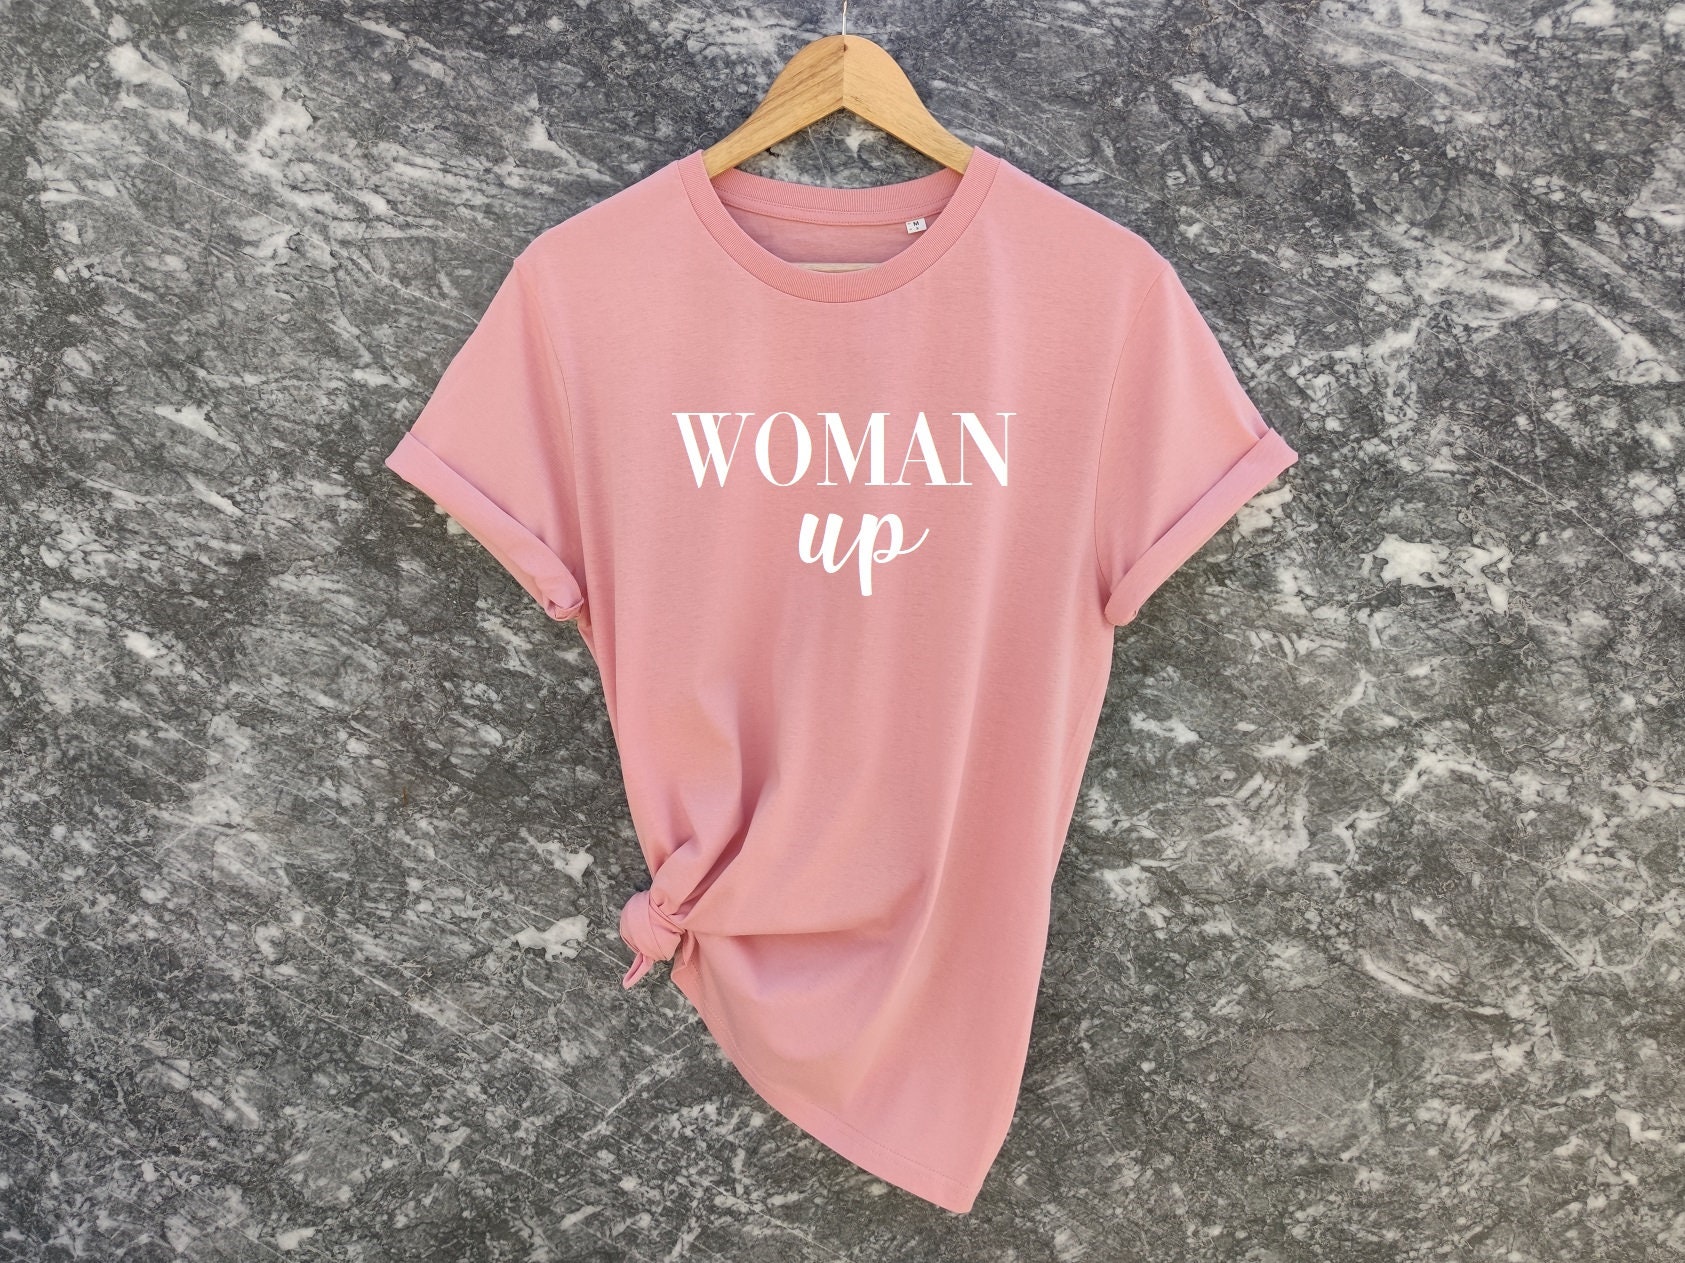 Discover Woman Up Shirt, Women's Shirt, Feminist Shirt, Woman Up Tee, Feminist Tee, Empowered Woman Shirt, Motivational Shirt, Inspirational Shirt